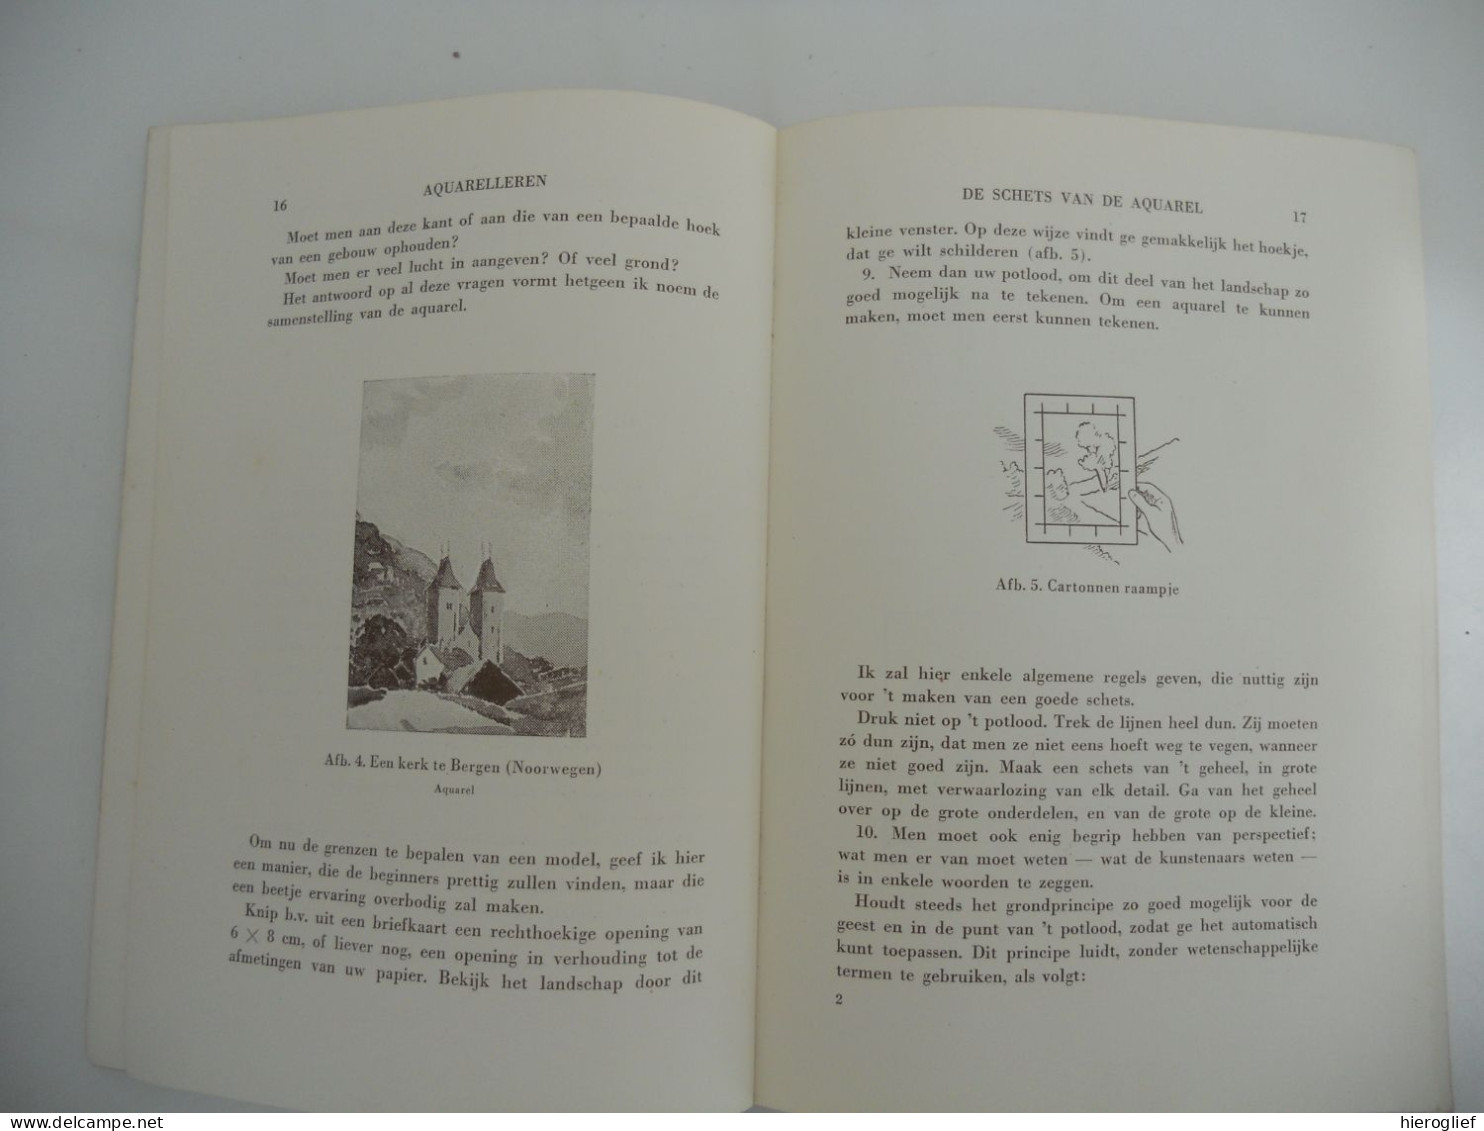 AQUARELLEREN In Tien Lessen Met 69 Afbeeldingen - Joël Thézard / Talens 1952 Aquarel Techniek Materiaal Schilderkunst - Practical